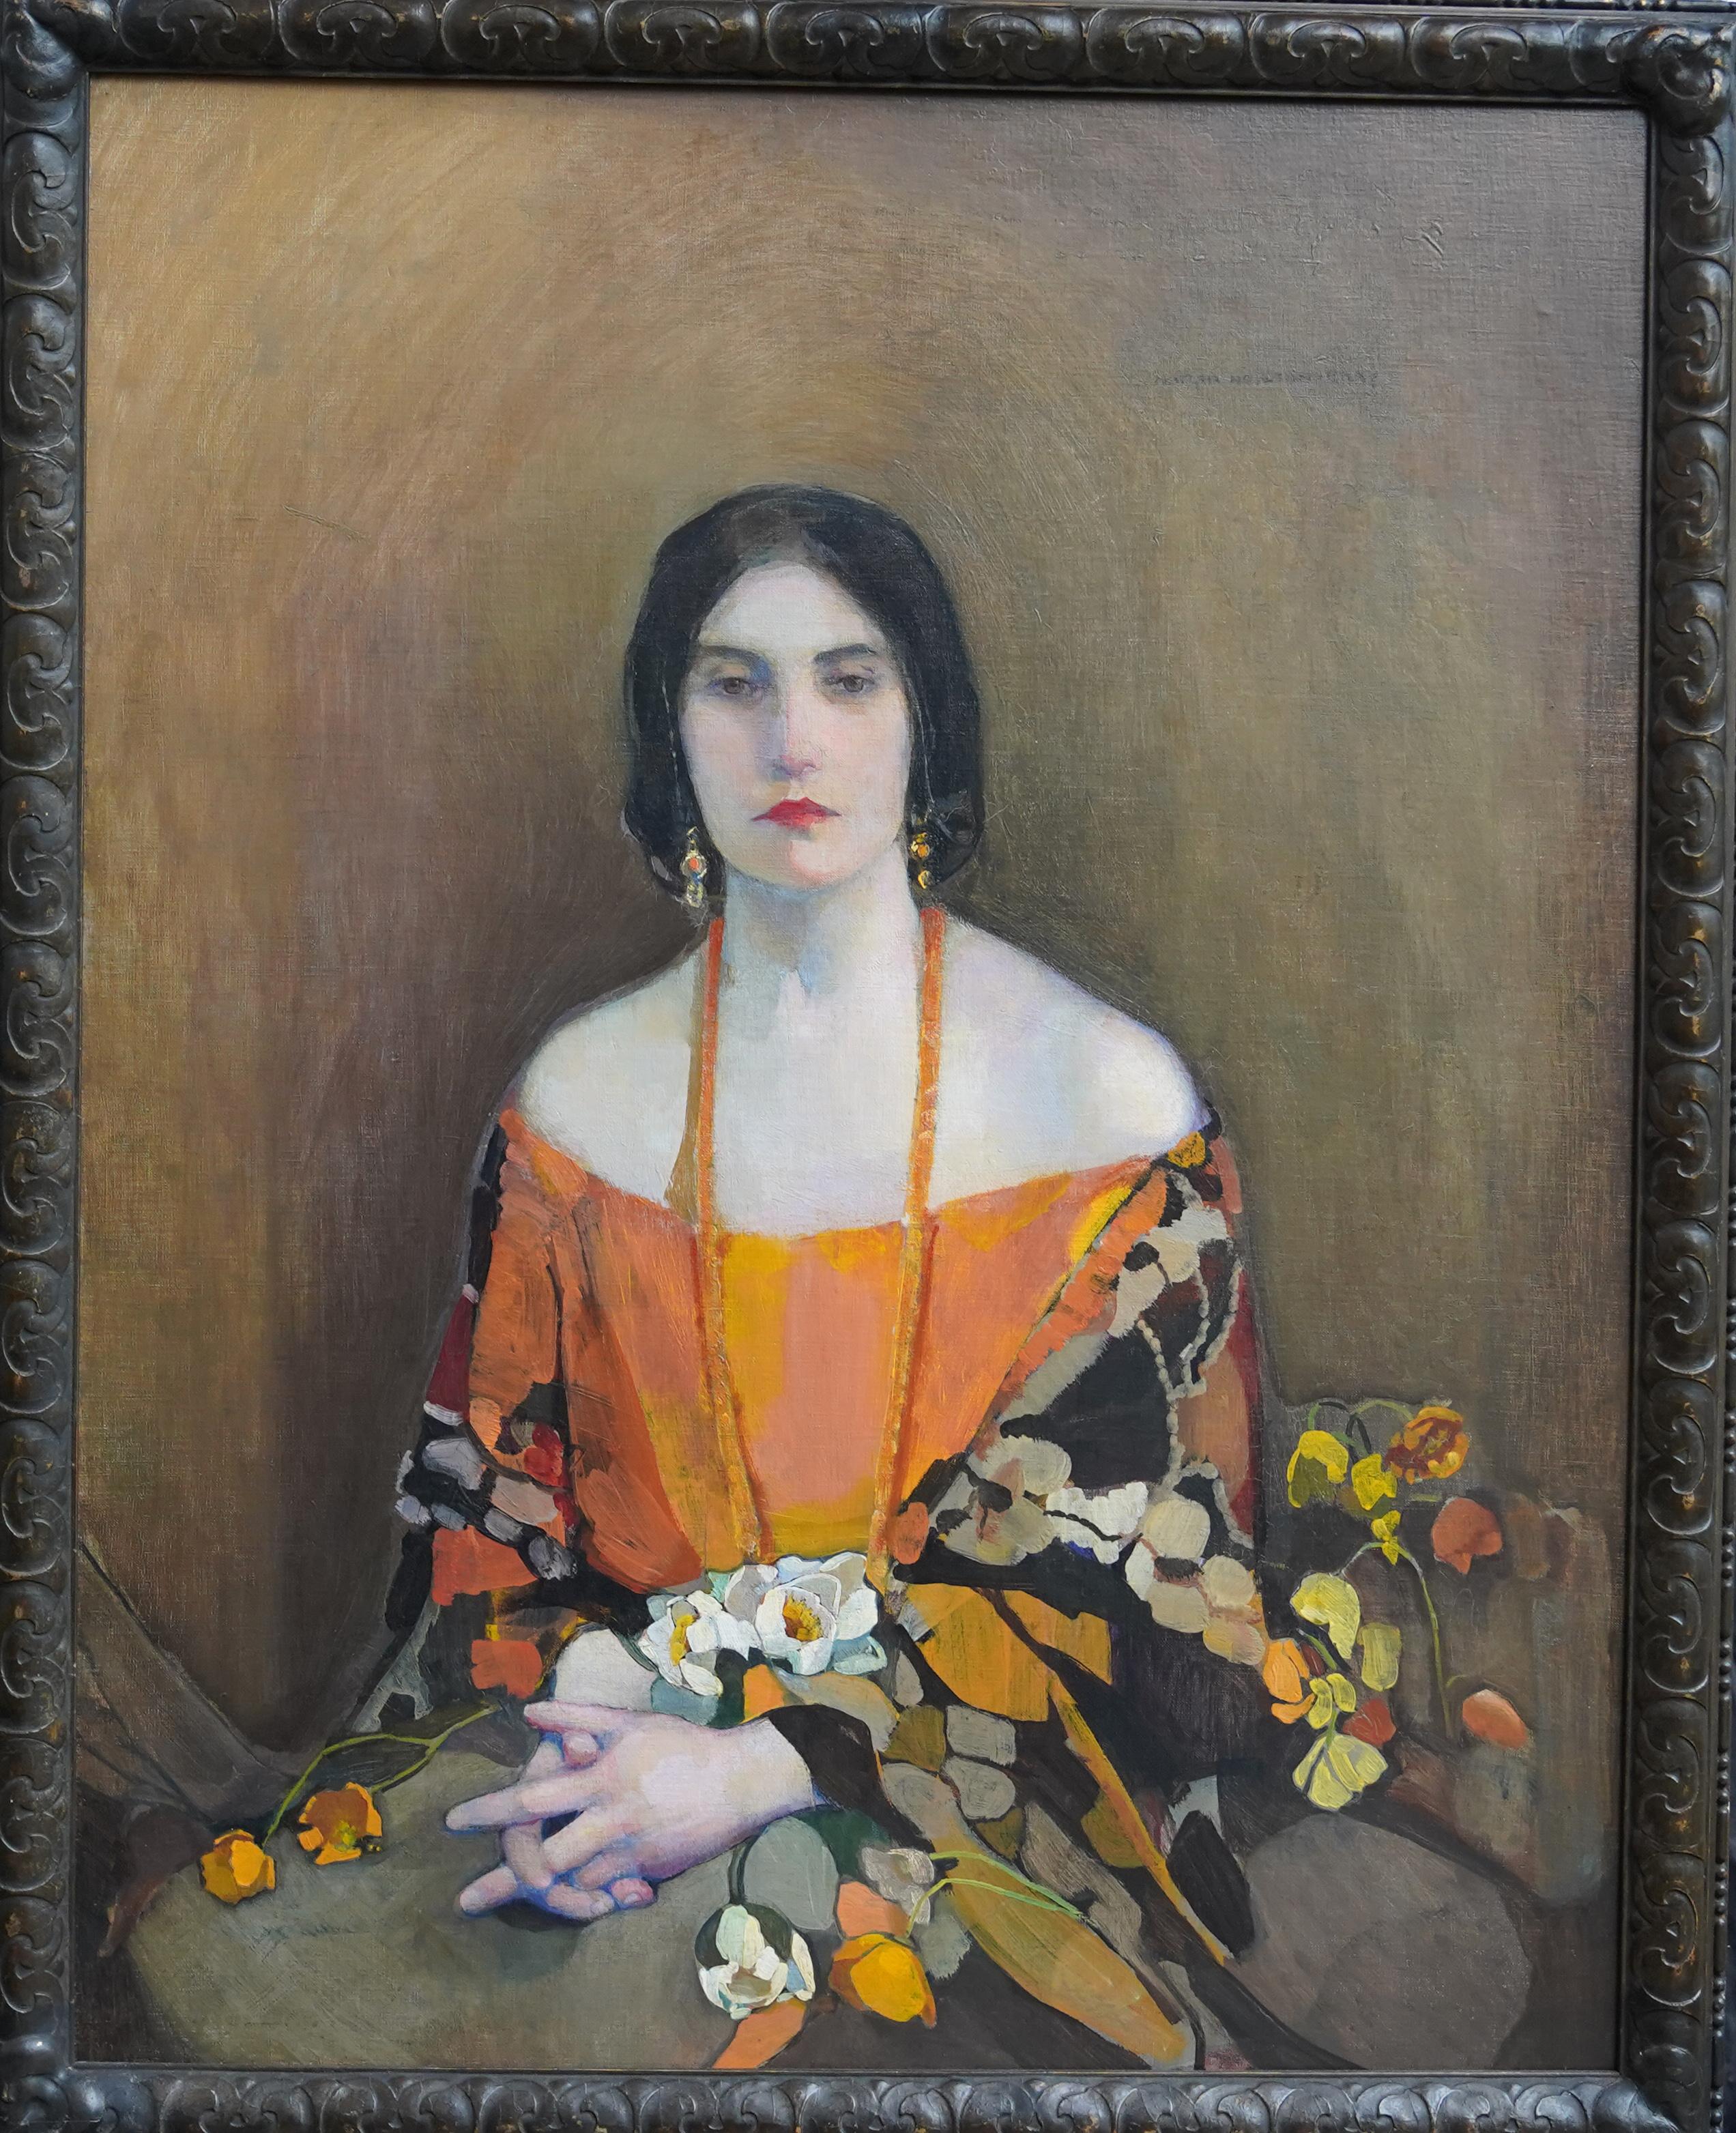 Portrait Painting Norah Neilson Gray - Exotique - peinture à l'huile écossaise des années 1920 exposée 'Glasgow Girl' portrait d'art